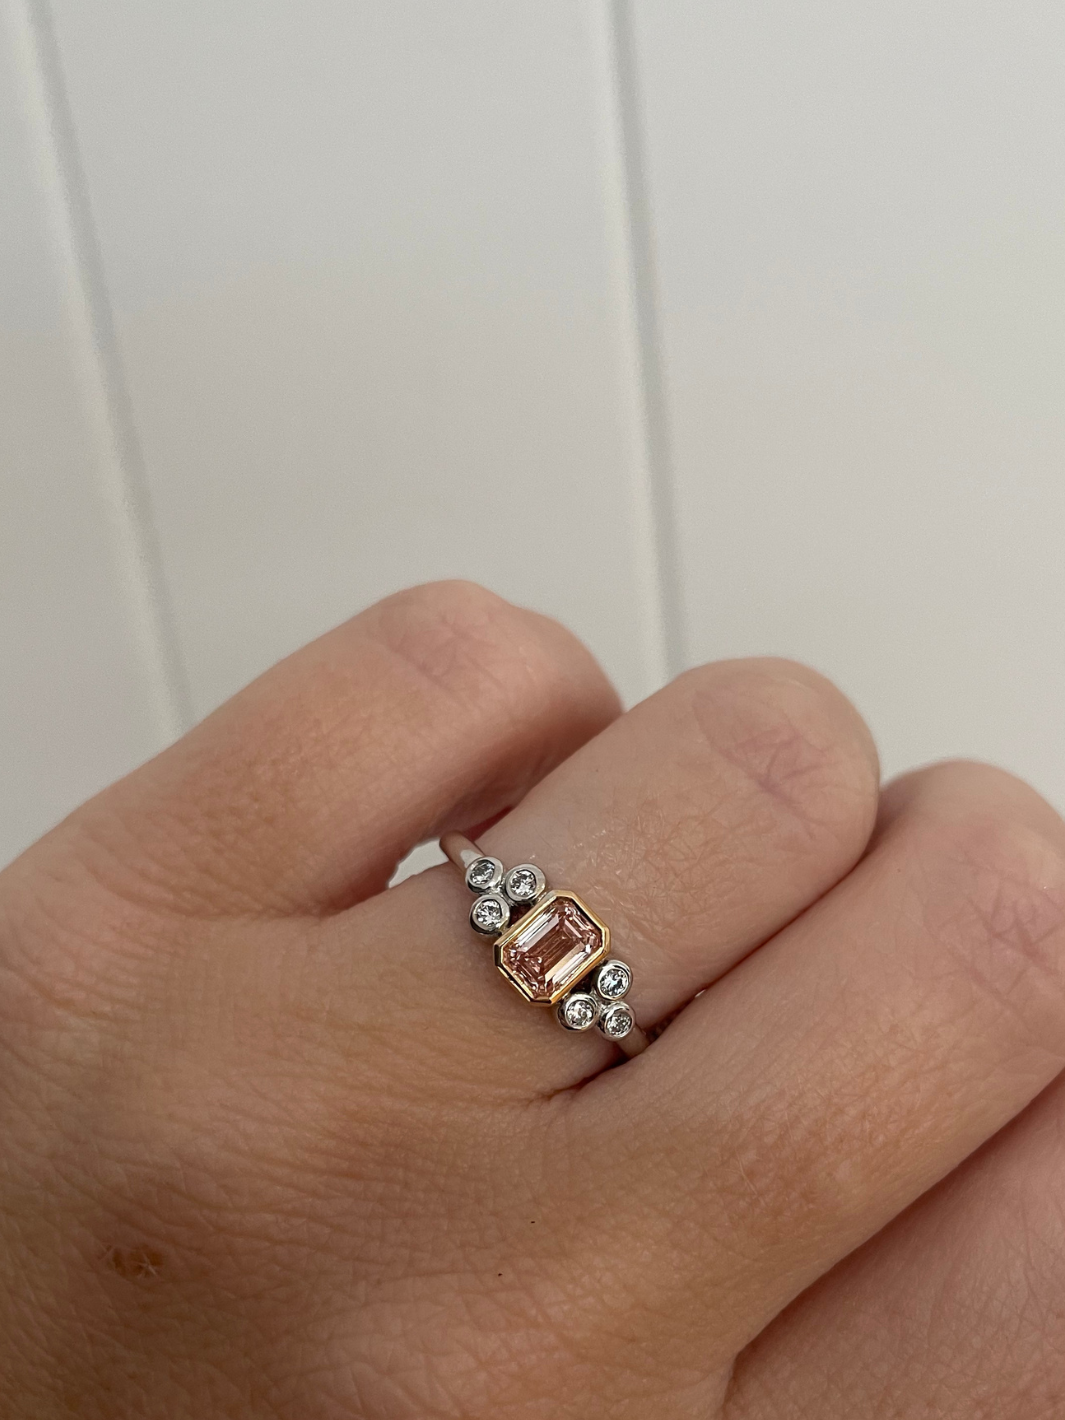 Lab Grown Diamond 18ct White & Rose Gold Pink & White Diamond Bezel Set Ring